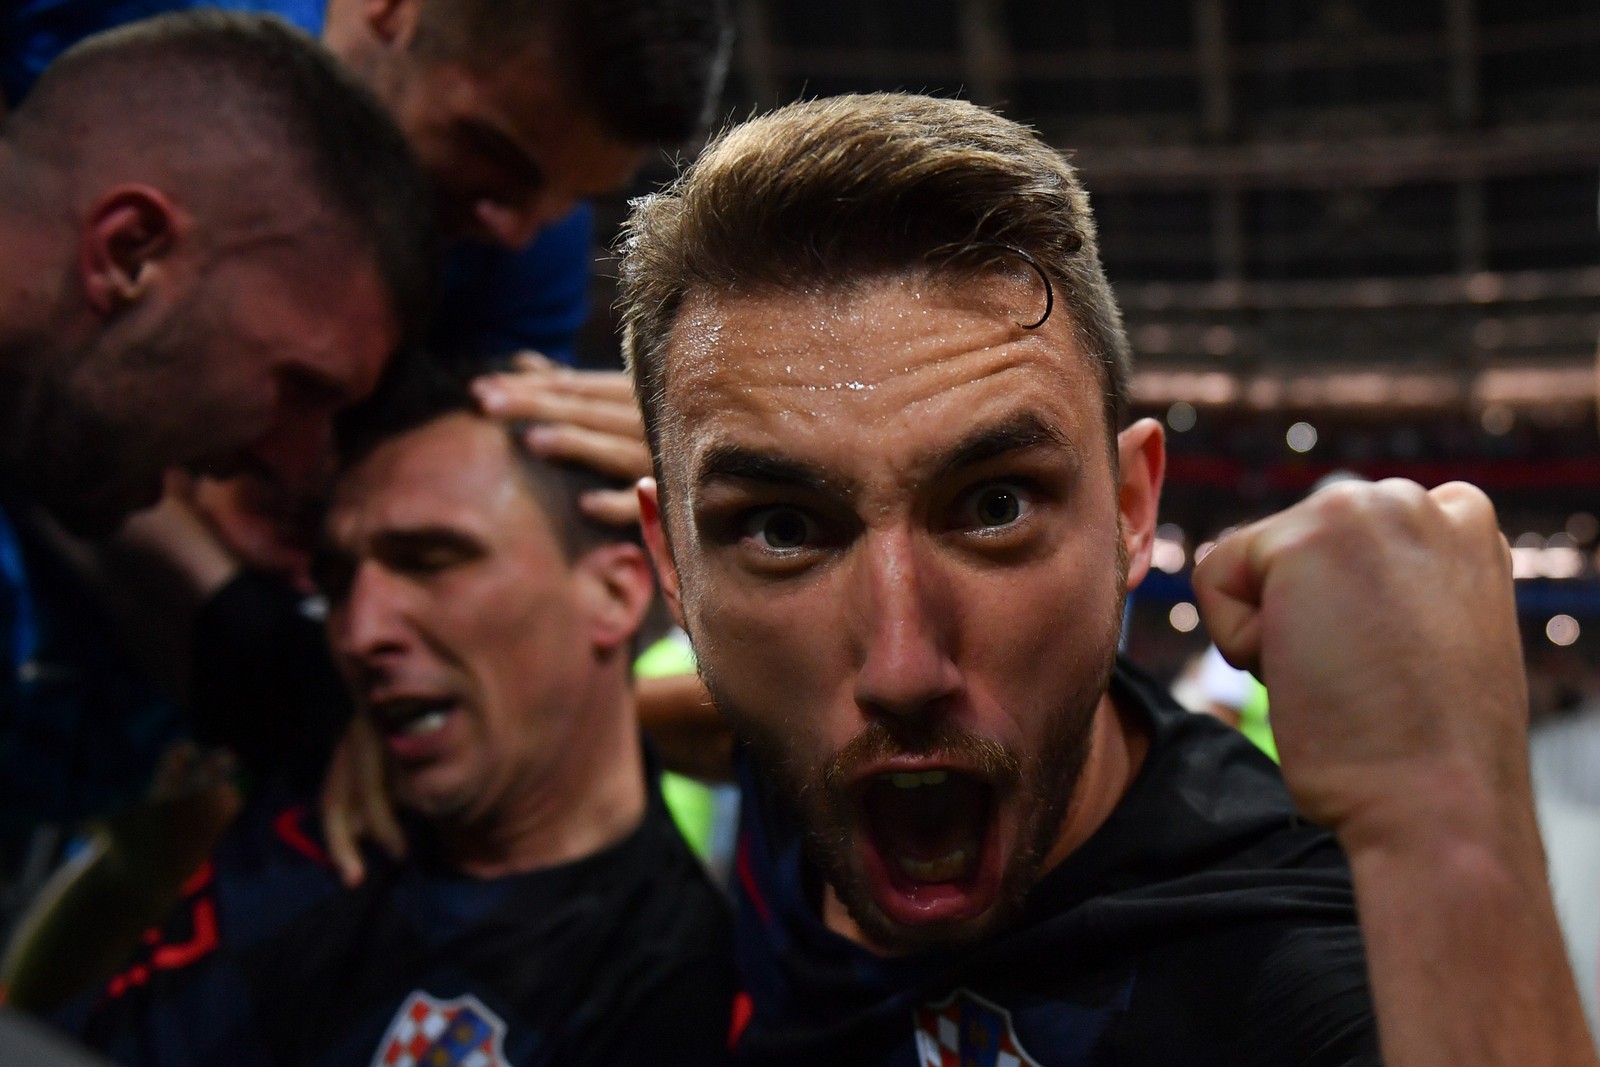 Những bức ảnh độc đáo của đội tuyển Croatia sau bàn thắng quyết định bán kết World Cup 2018 | 50mm Vietnam